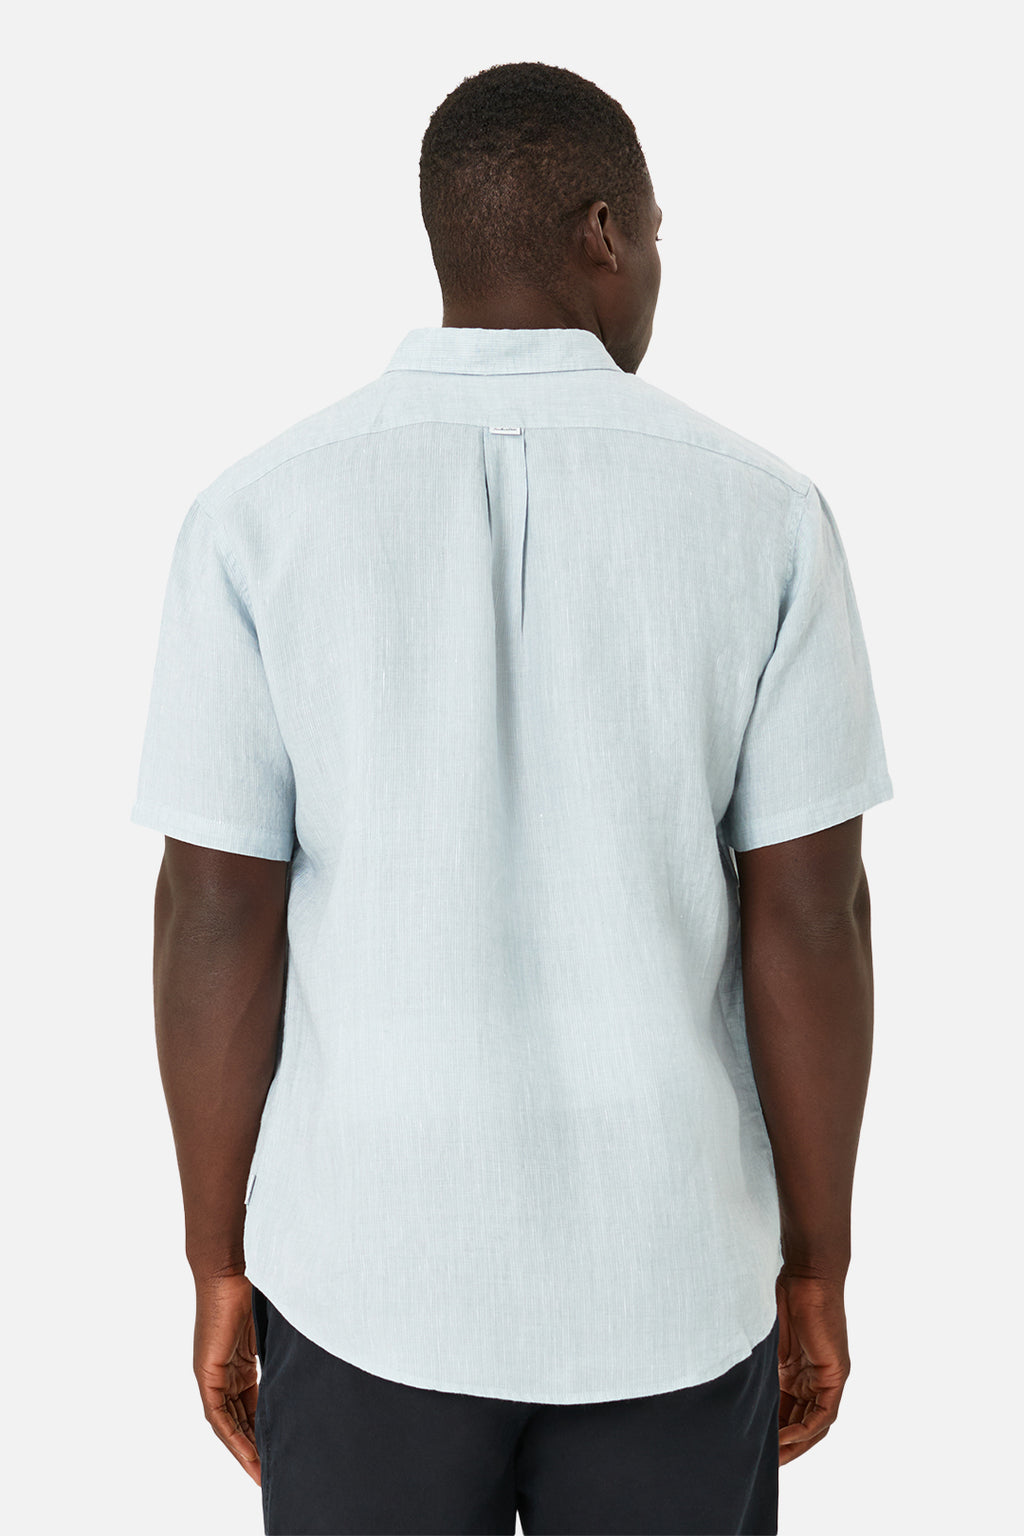 [The Somersby Linen S/S Shirt - Light Blue] - Industrie